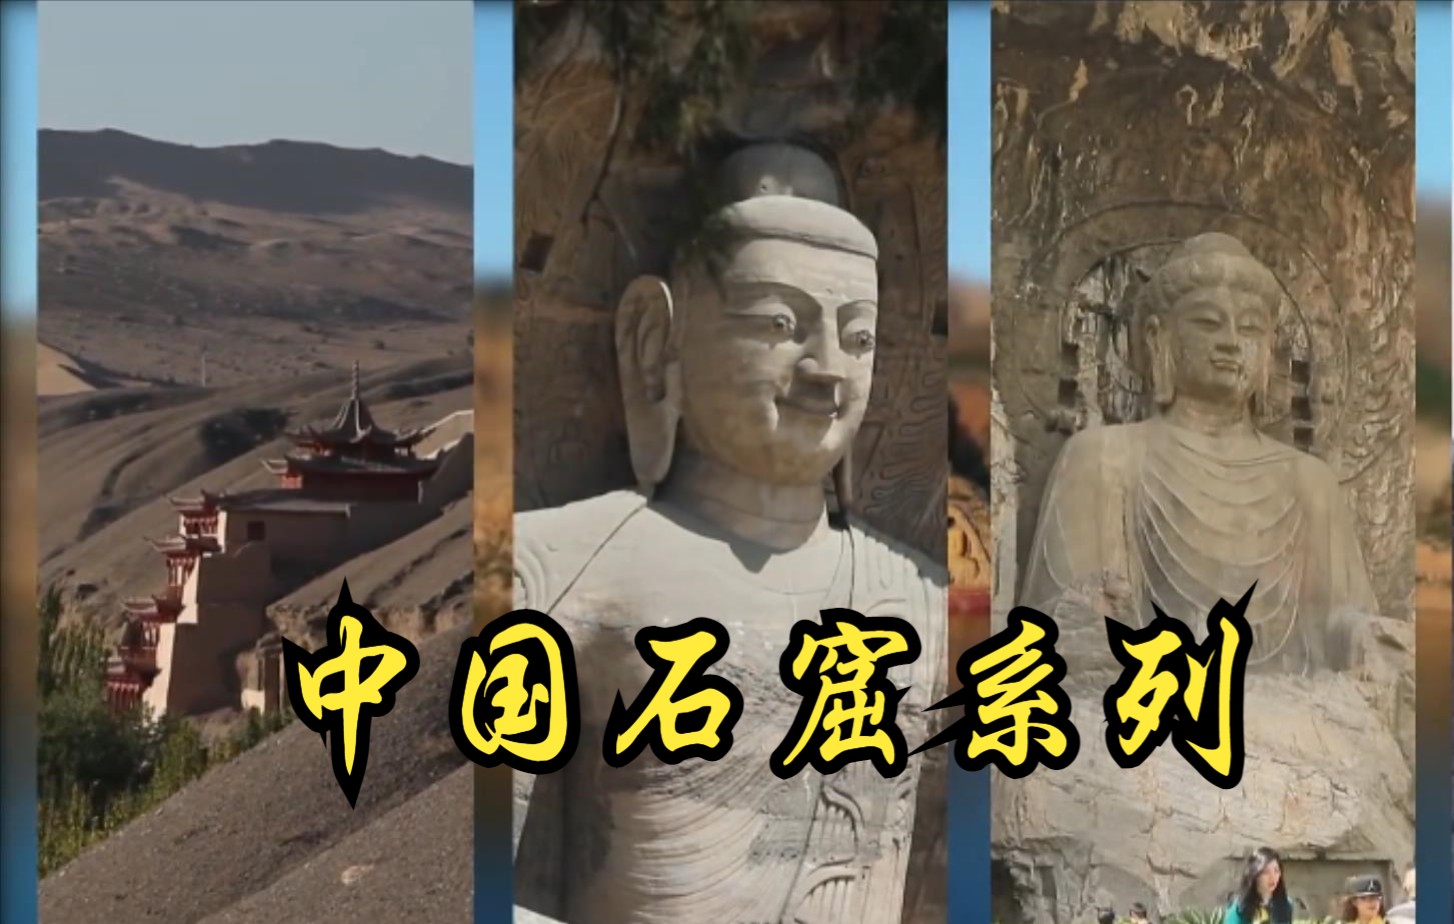 【中国】【纪录片】中国石窟系列纪录片 Chinese Grotto documentary series